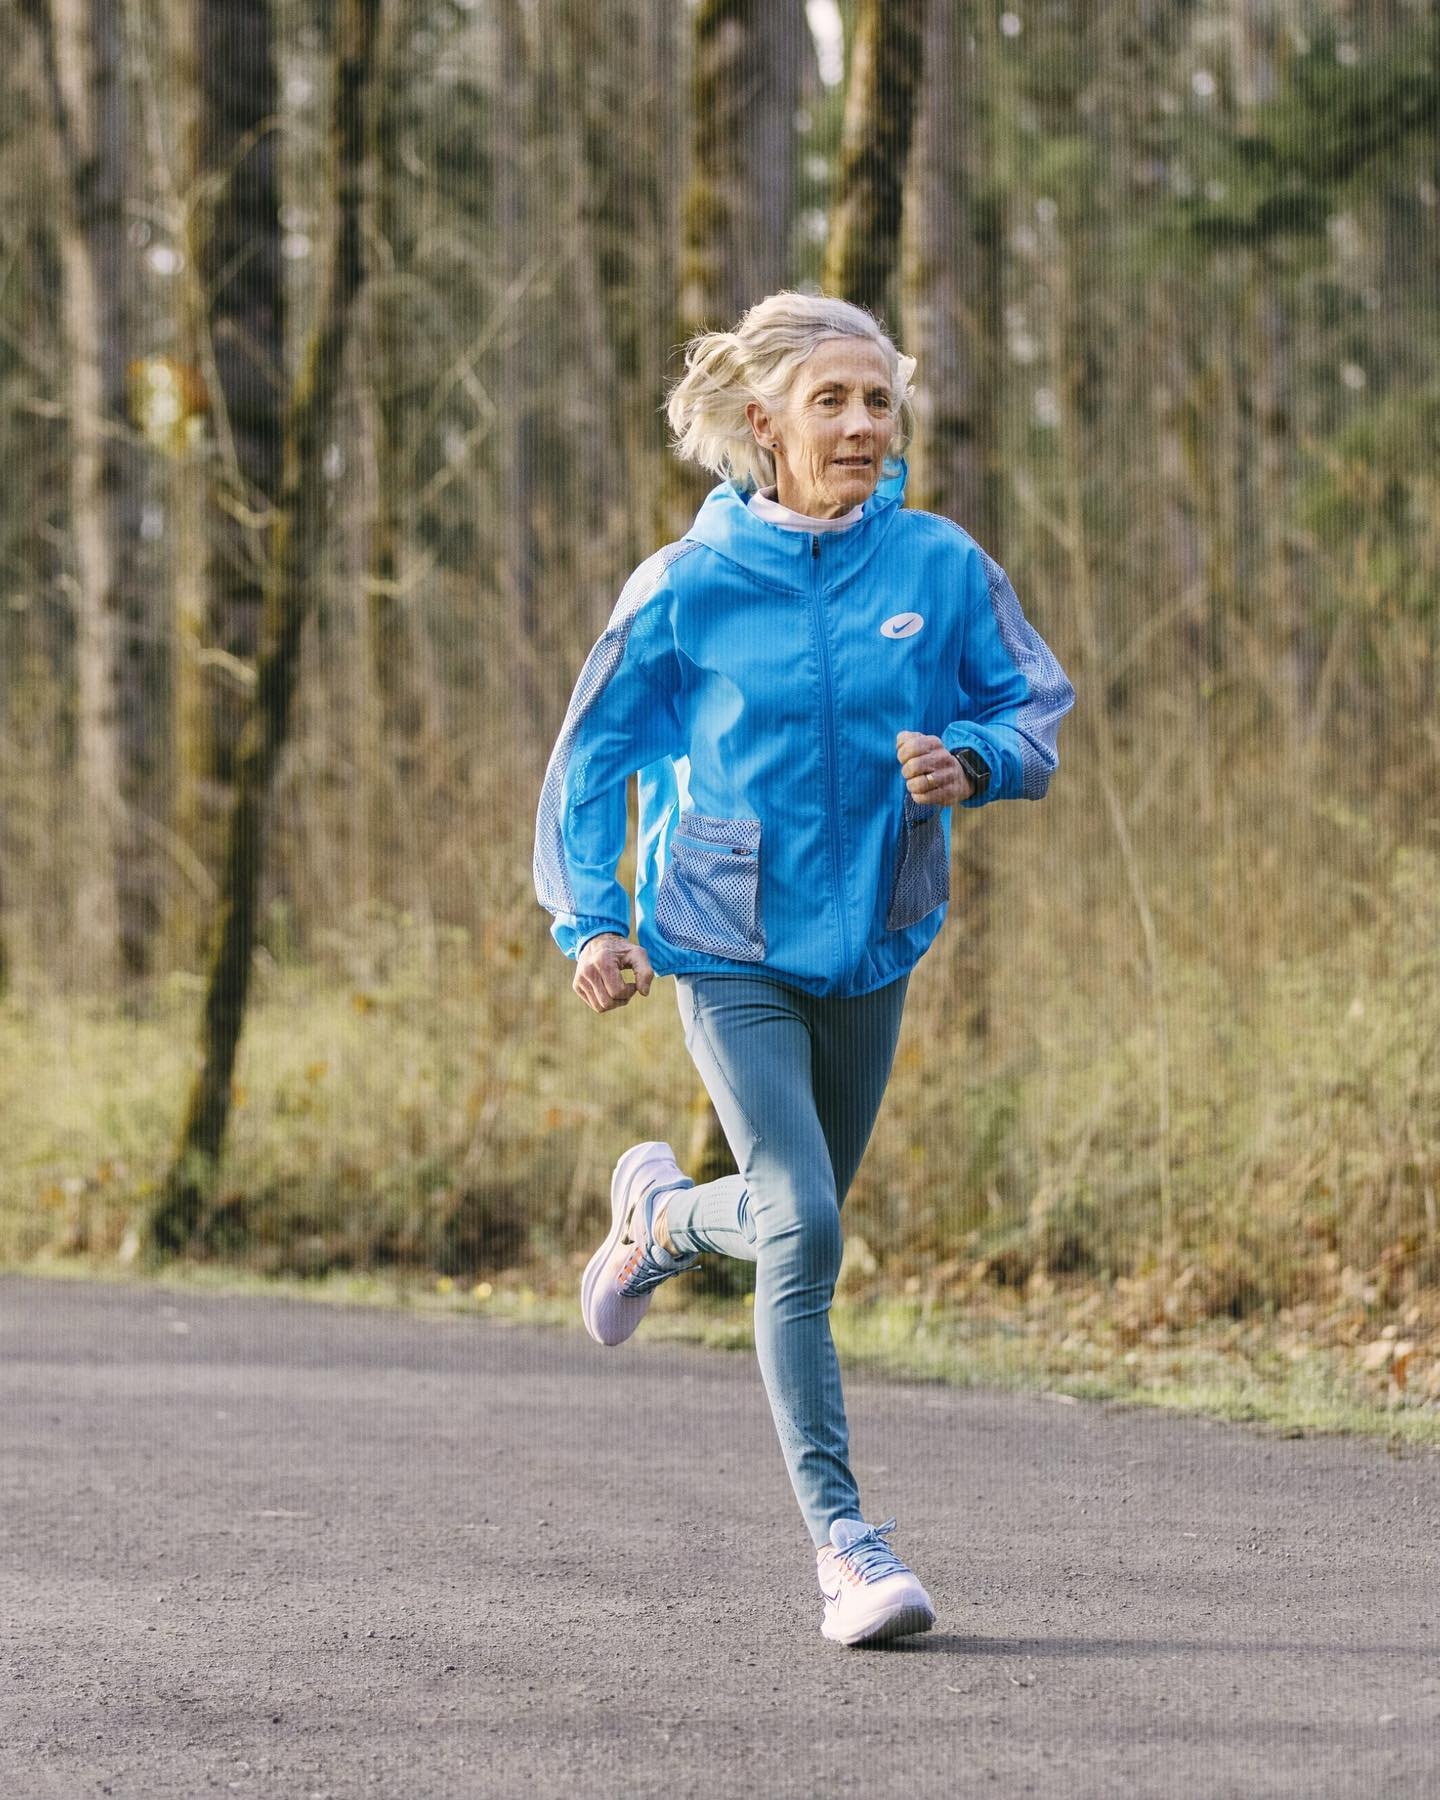 66歲美國婆婆完成6大馬拉松大滿貫 網民錯重點引年齡熱議？